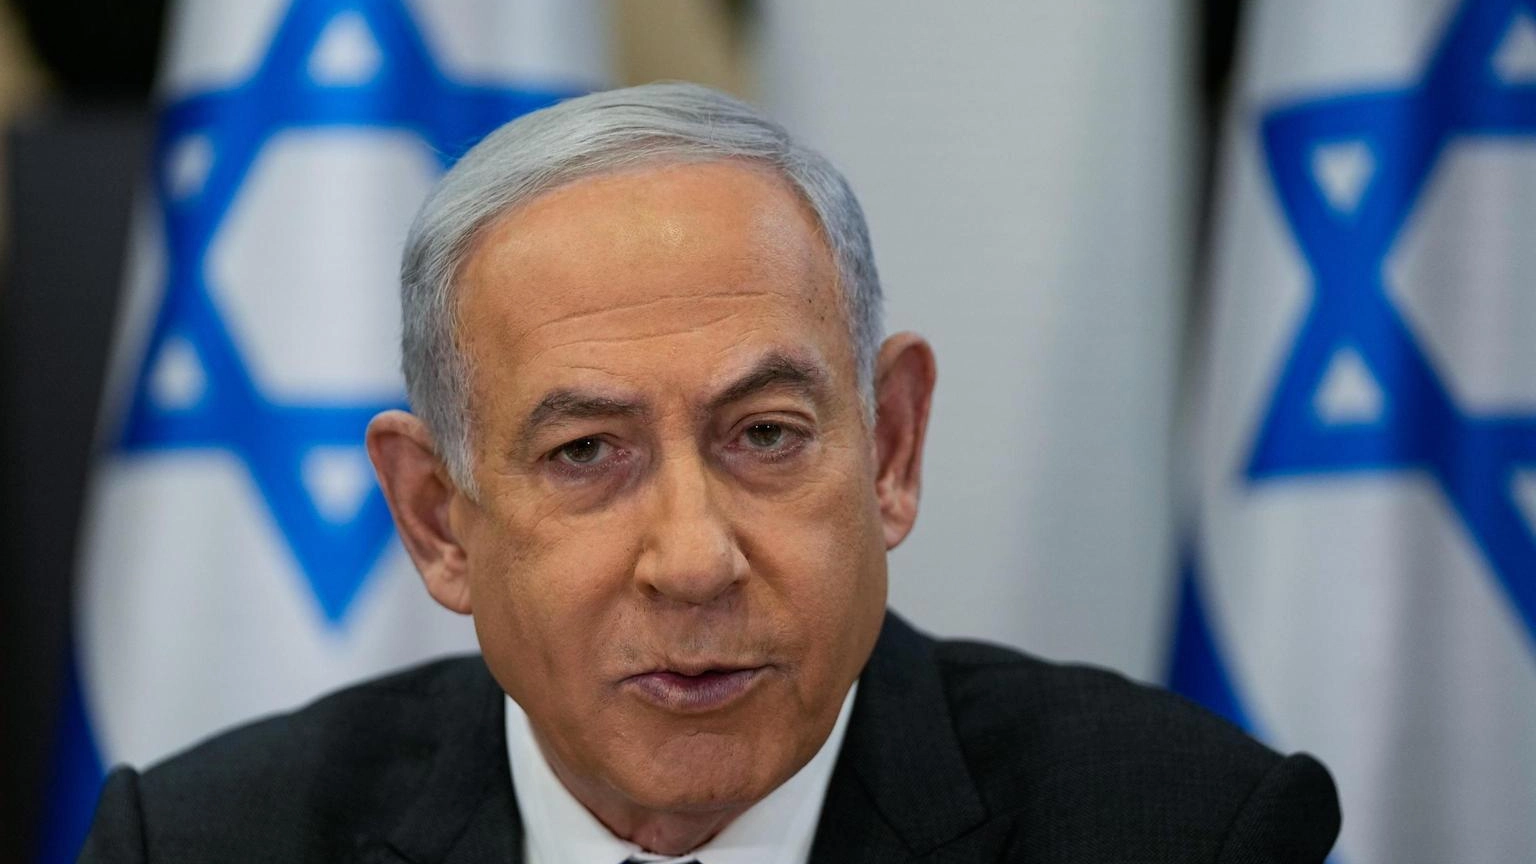 Netanyahu, avanti per molti mesi, non cedo alle pressioni